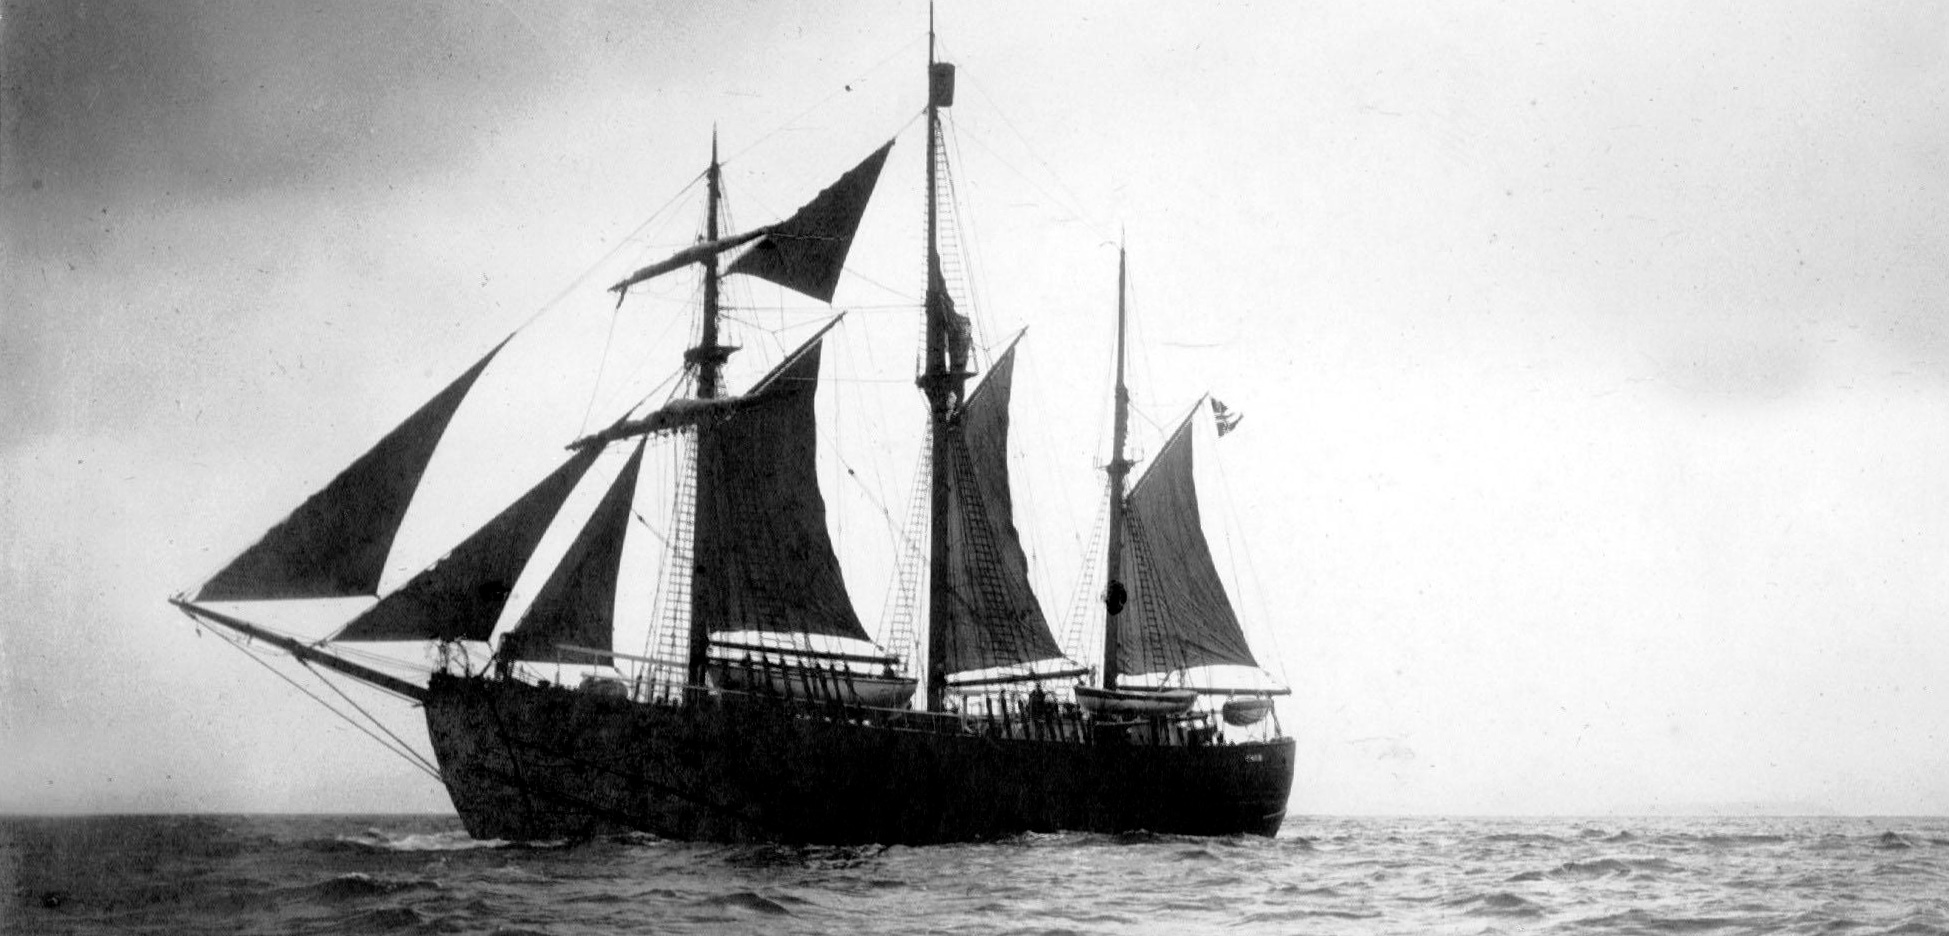 Norwegian explorer Fridtjof Nansen's ship, Fram